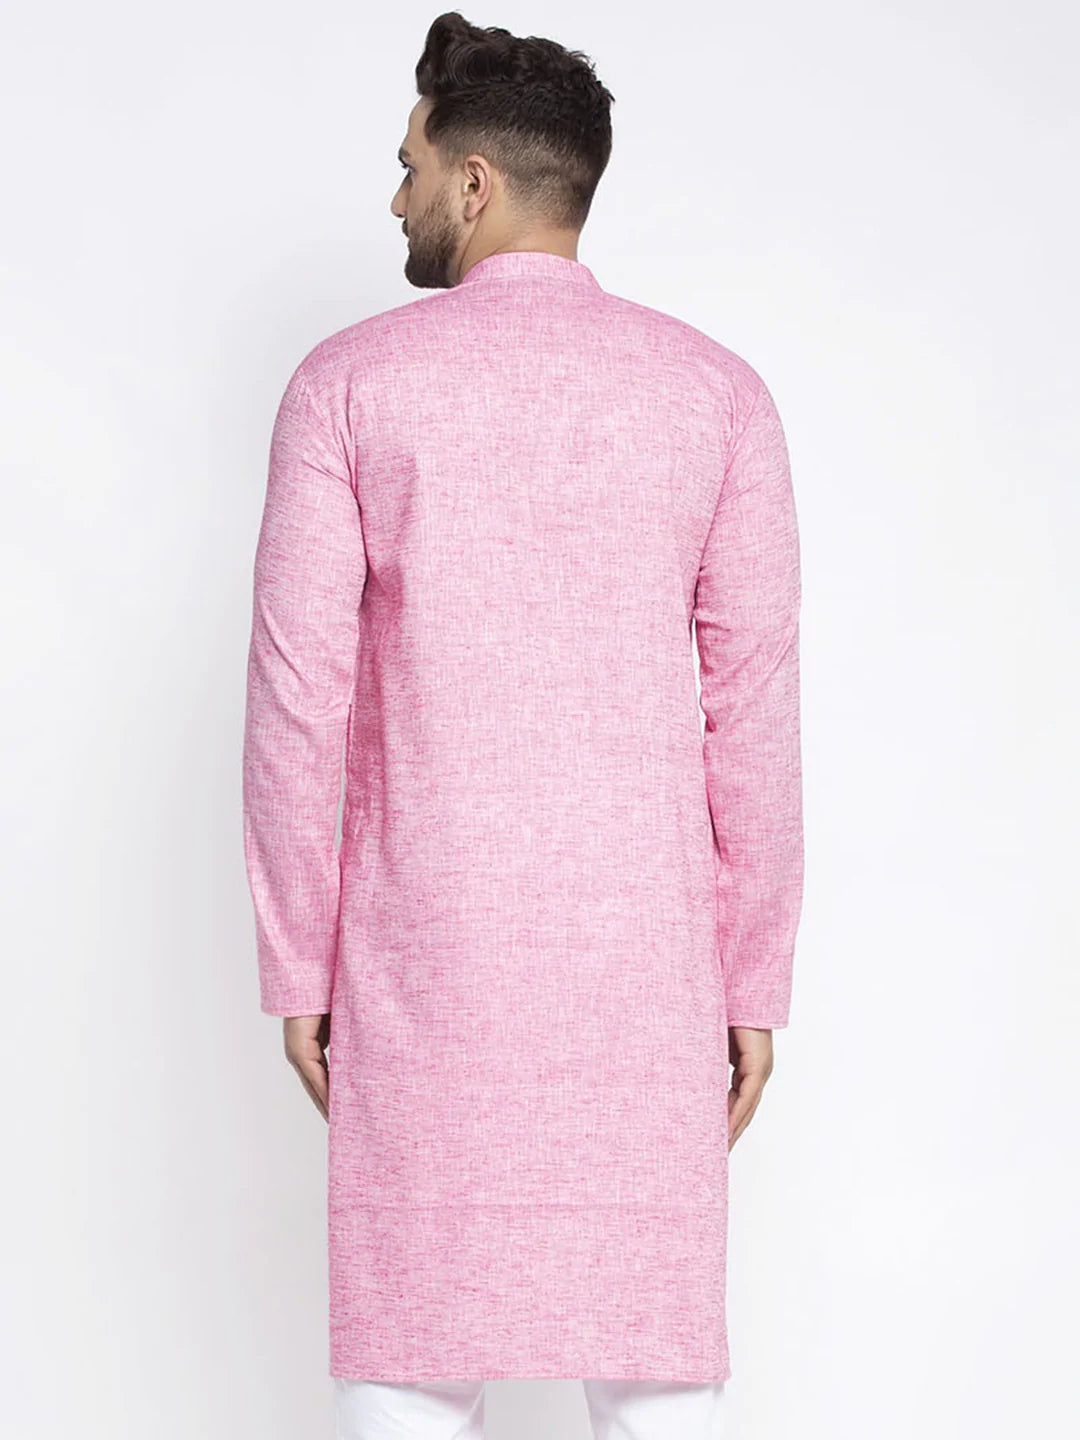 Jompers Men Pink & White Self Design Kurta Only ( KO 638 Pink )